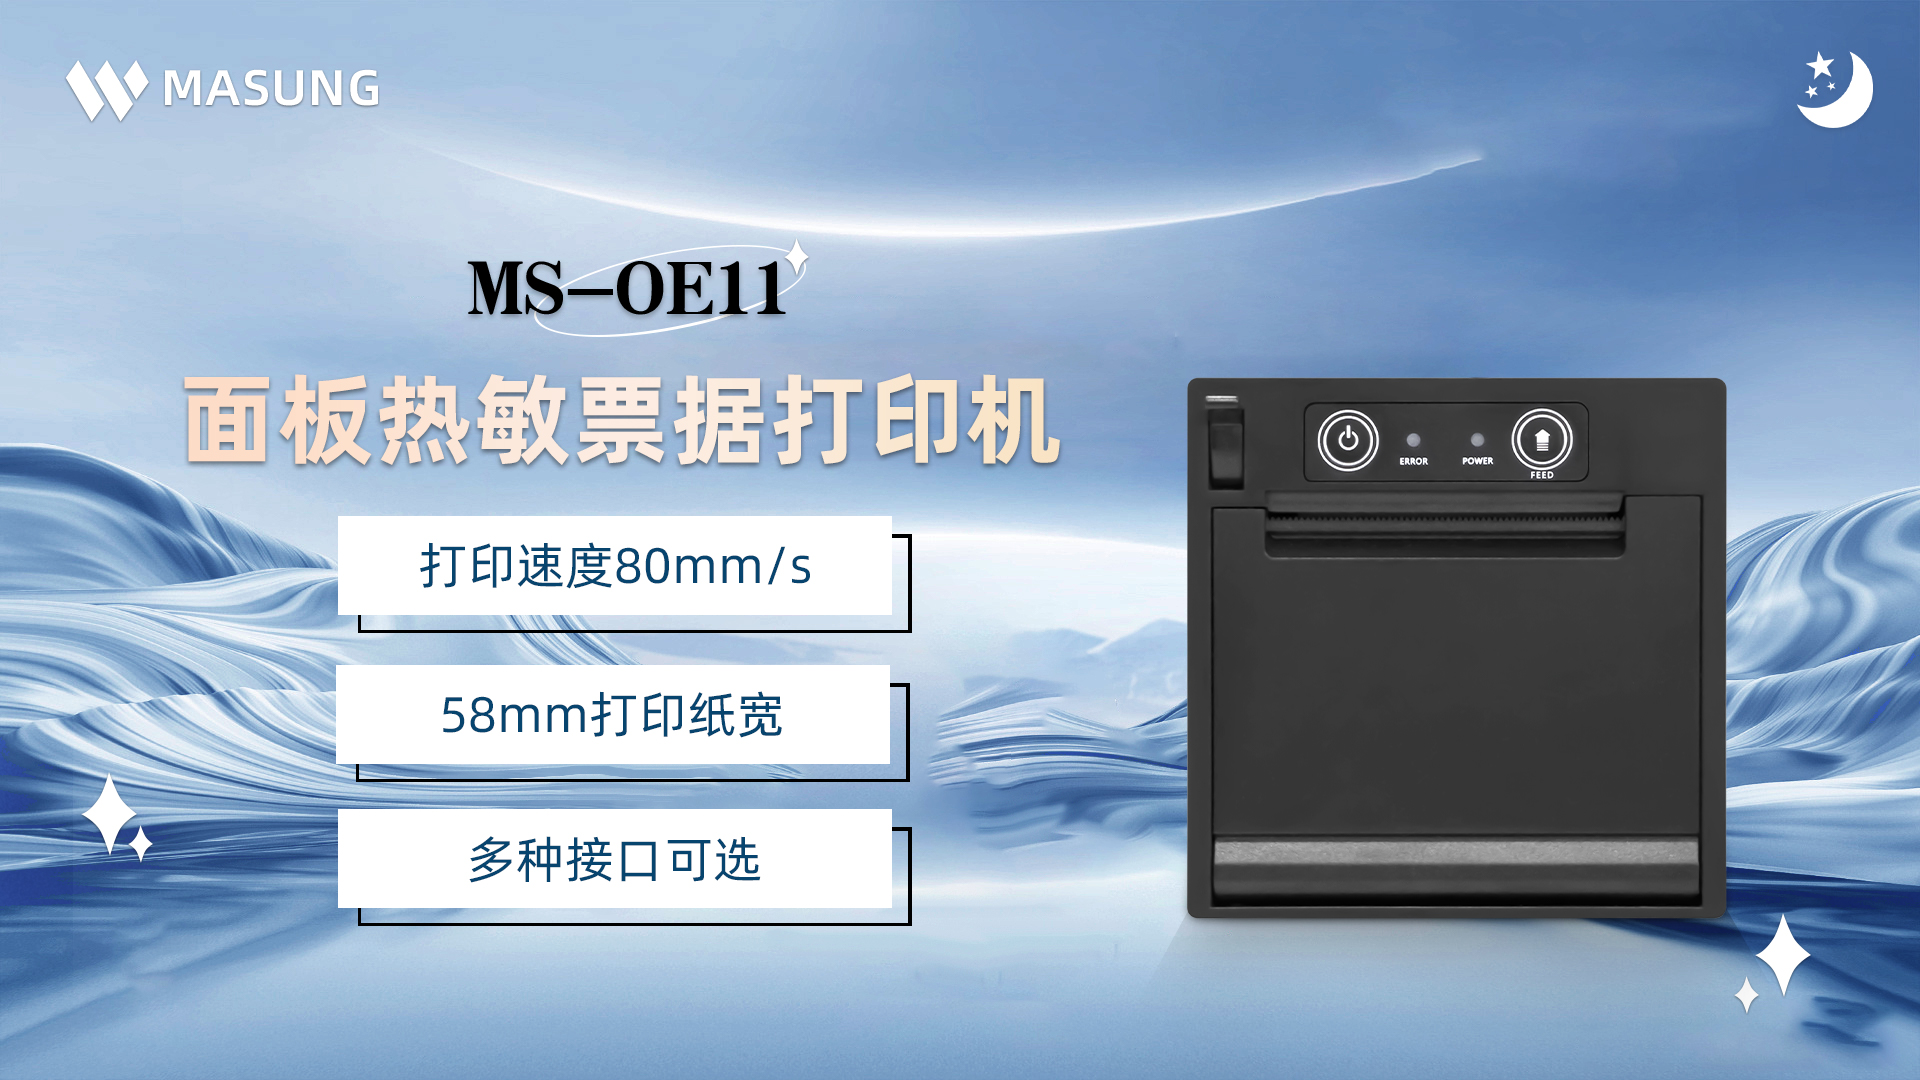 美松打印机MS-OE11为自助存款设备提供解决方案